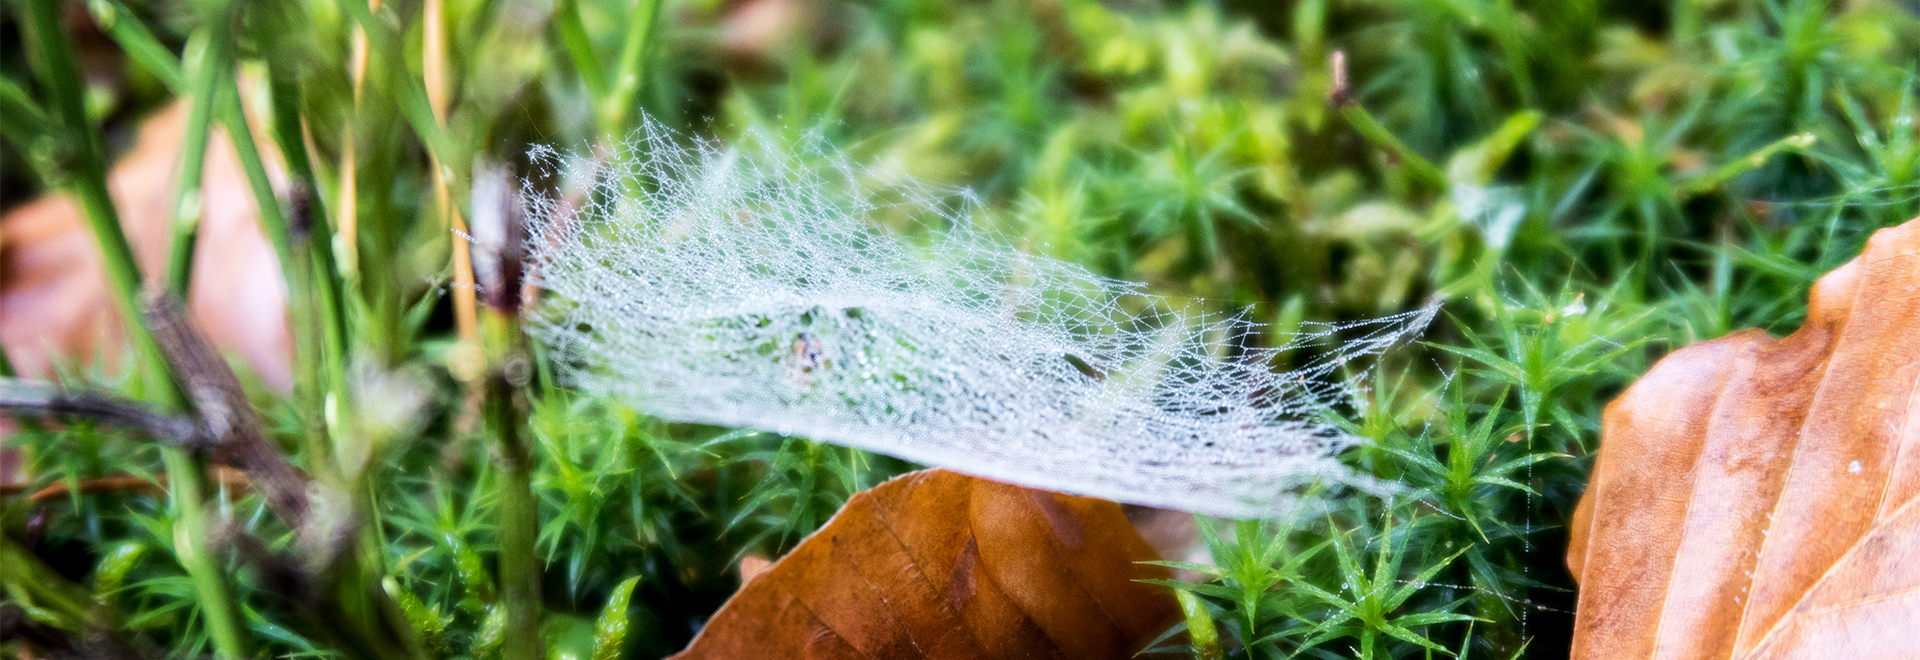 Tautropfen an Spinnennetz im moosigem Waldboden mit Laubblatt